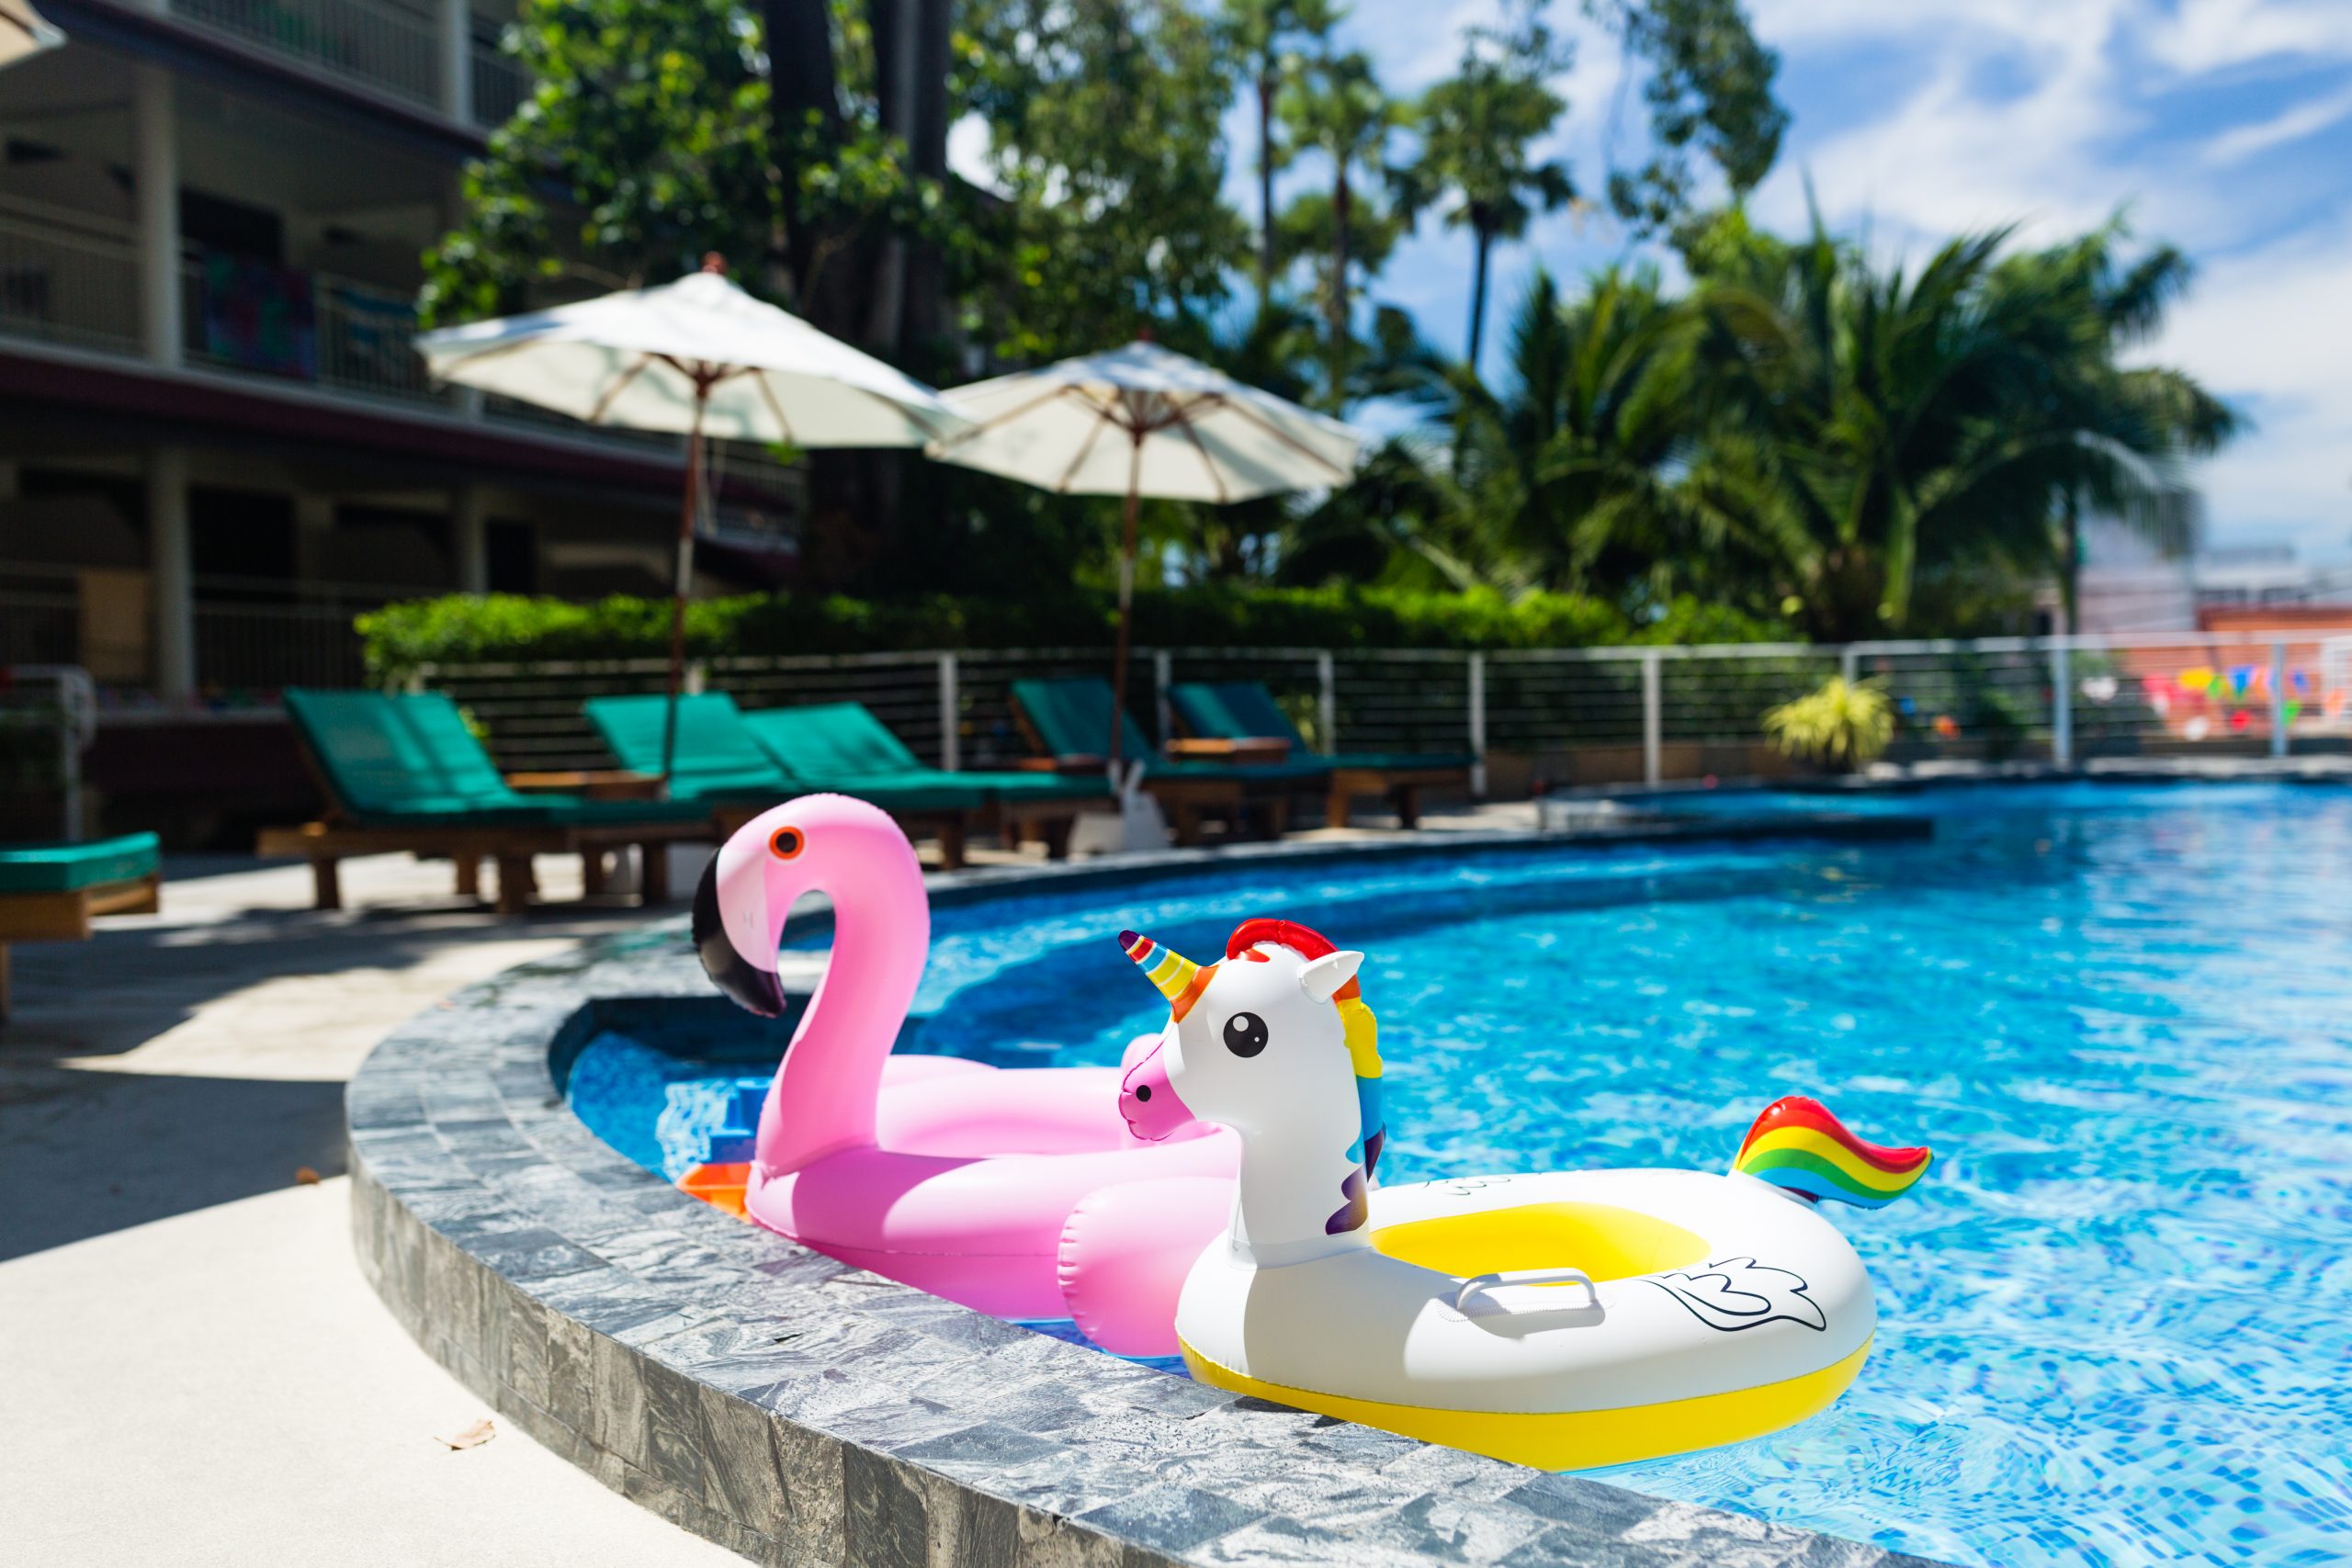 Flamingo and Unicorn Floaties in Pool